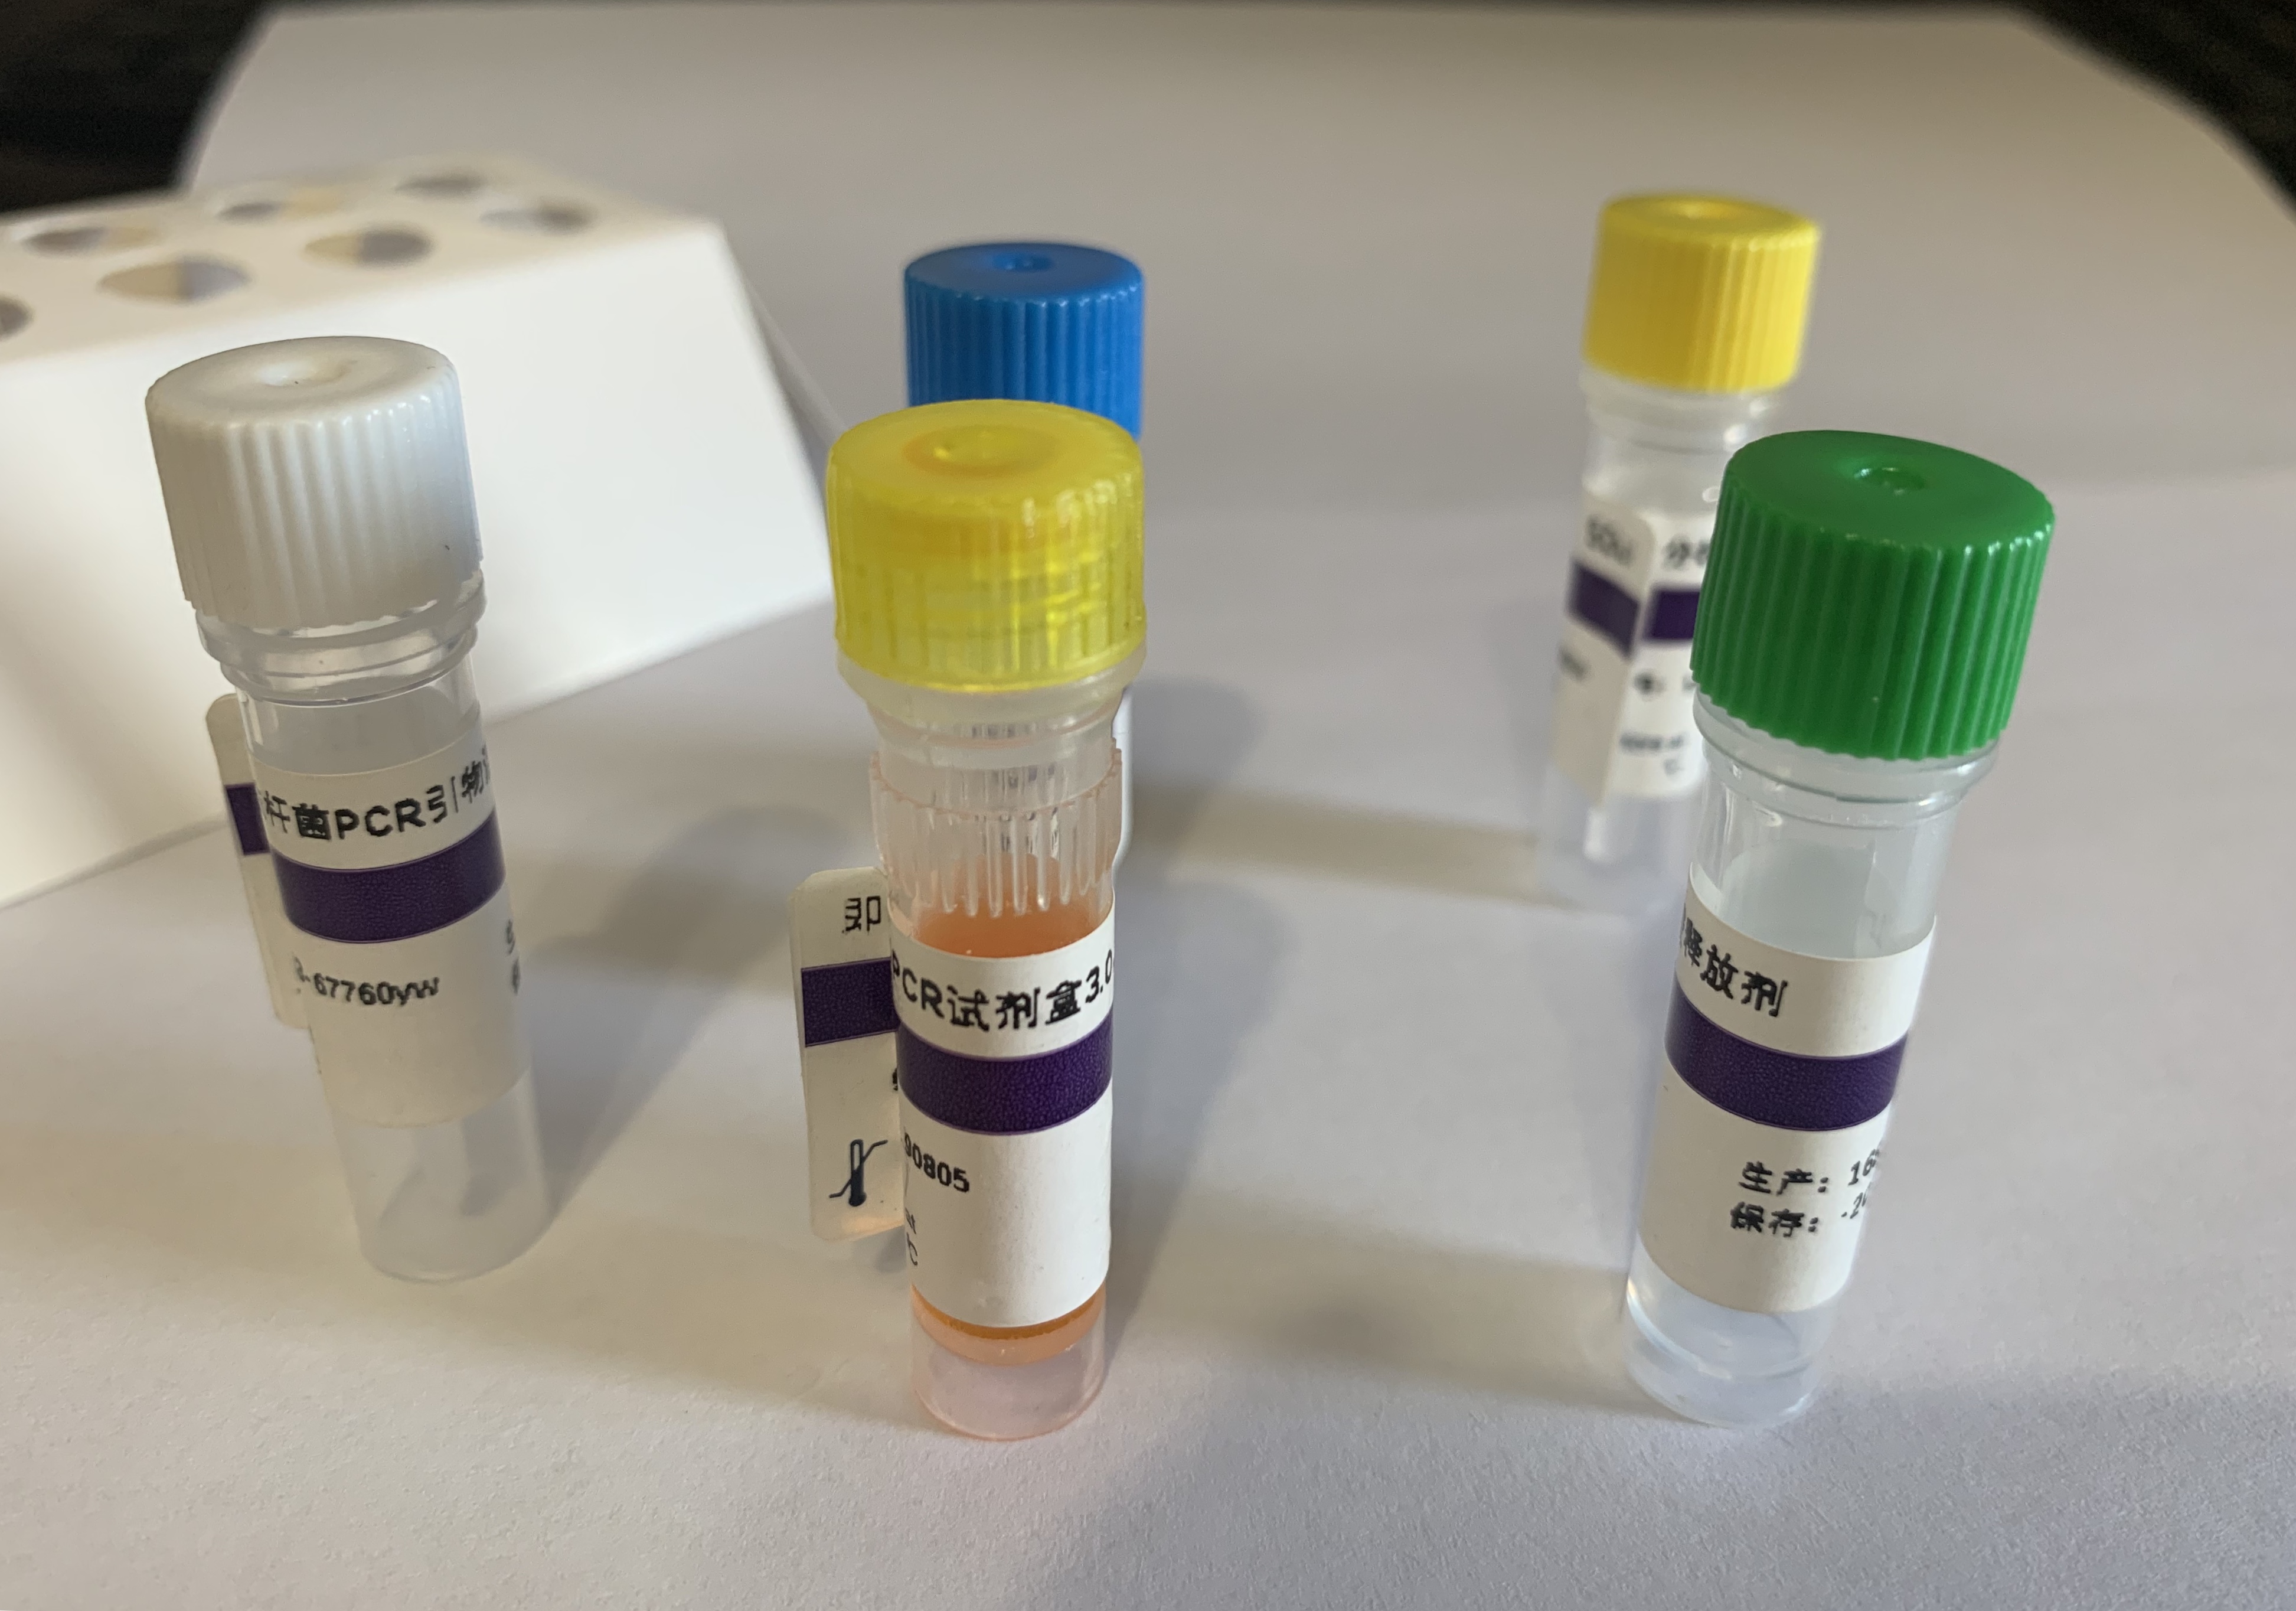 紫苏子PCR鉴定试剂盒